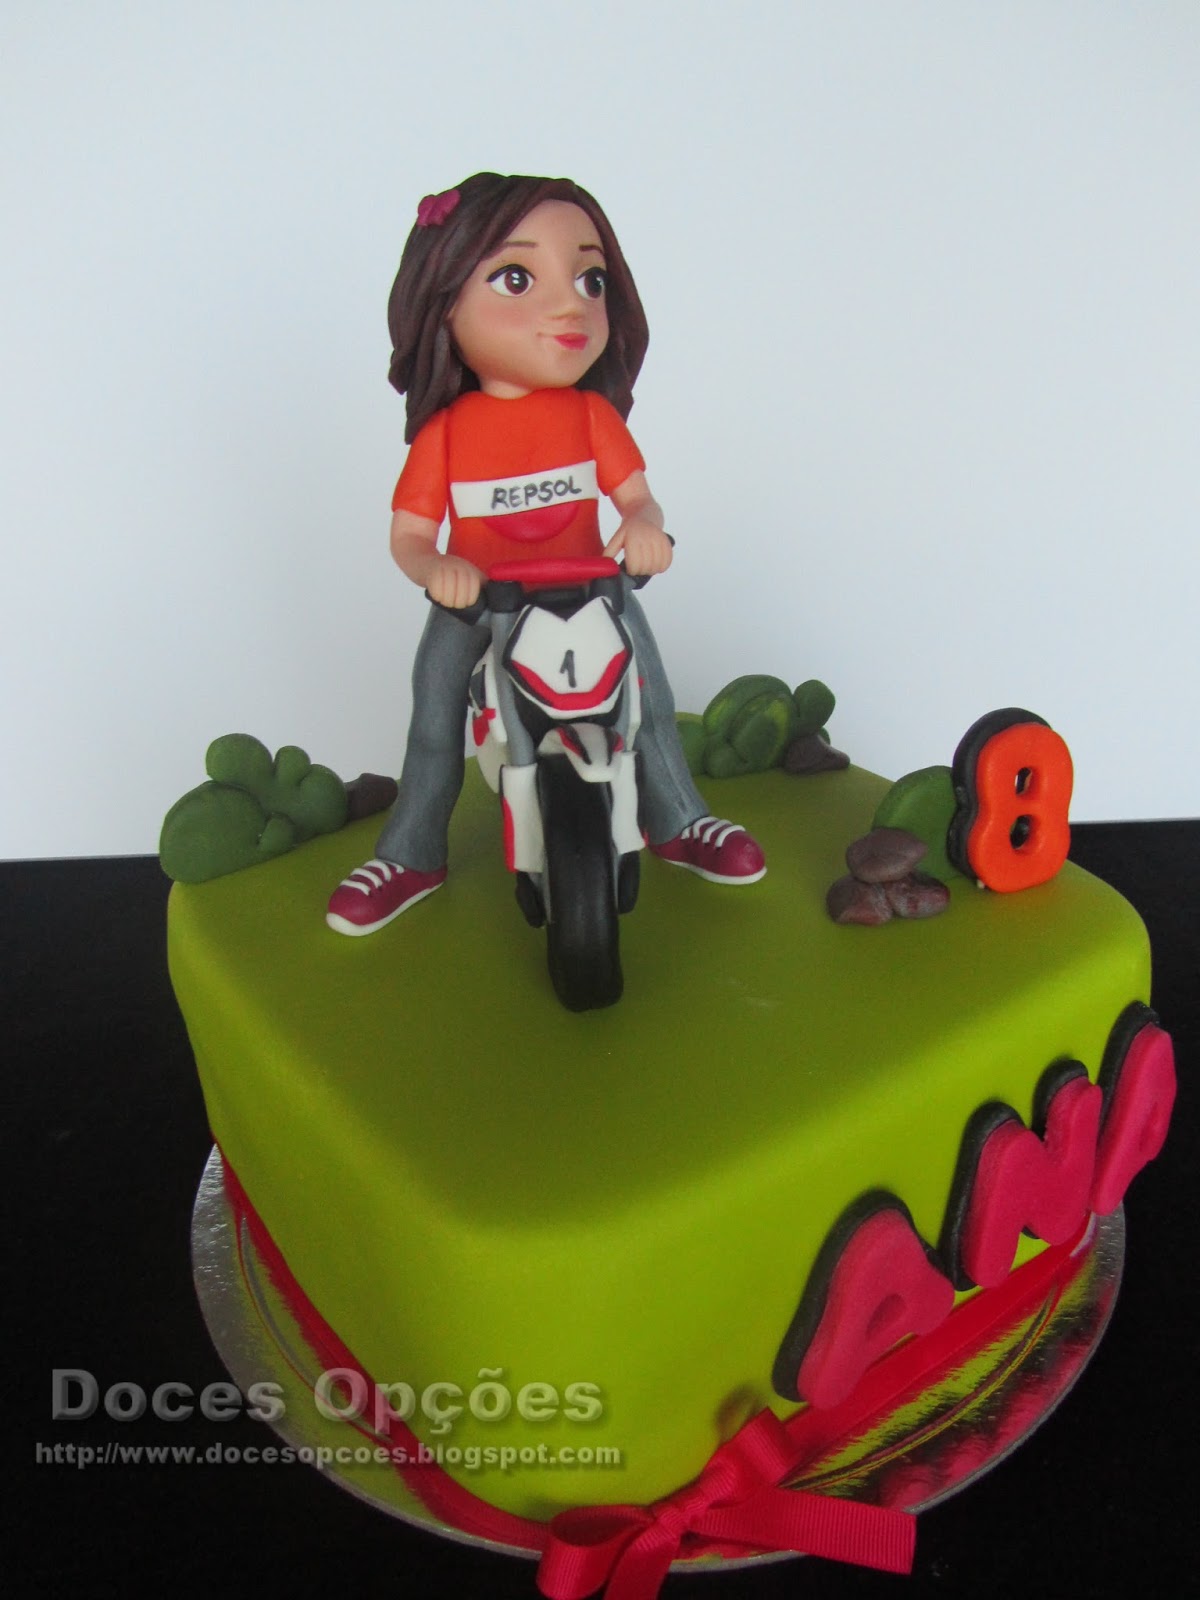 Bolo de Moto, Ana's Cakes